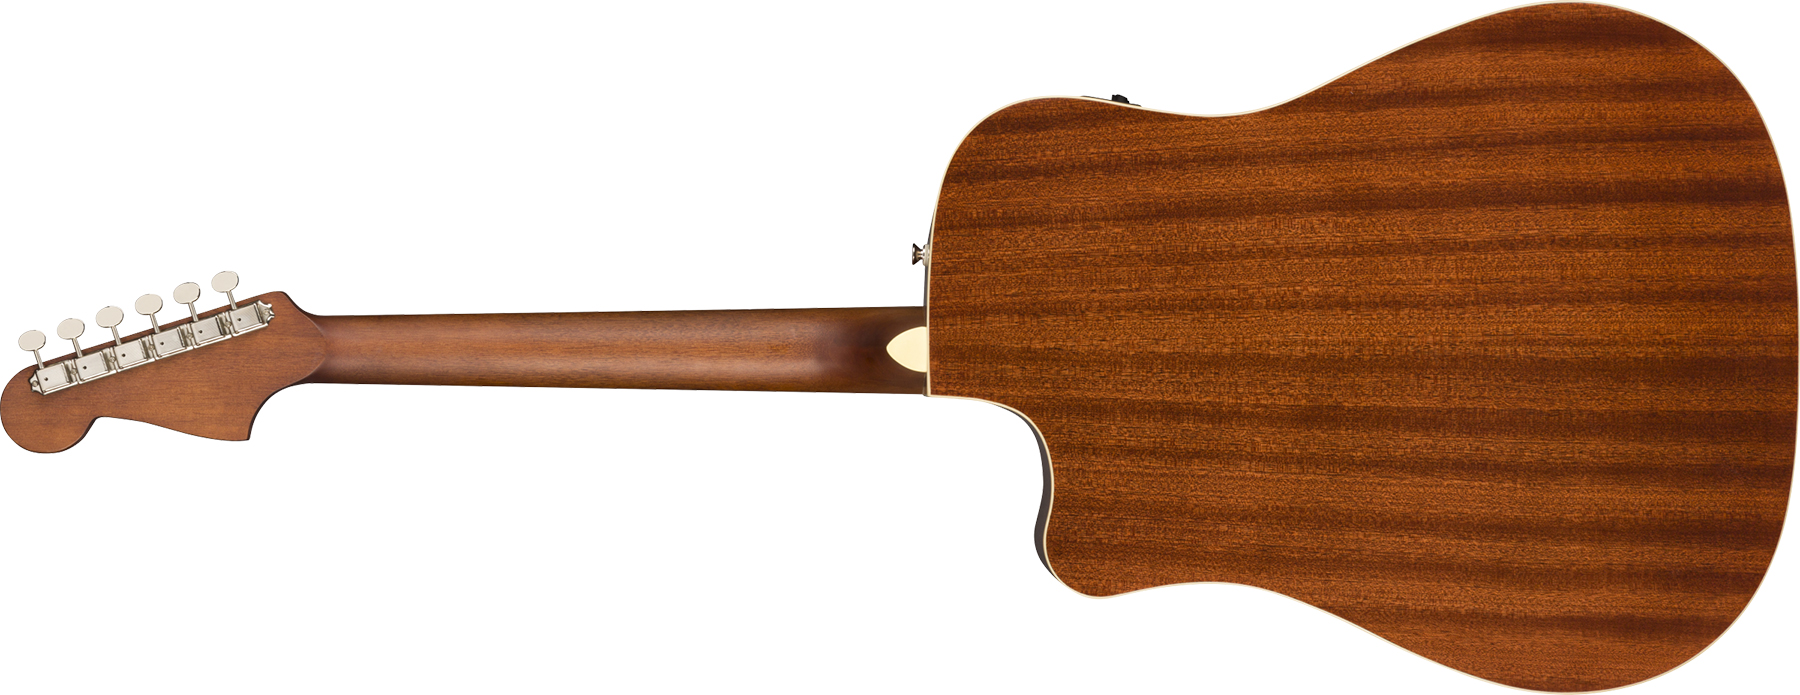 Fender Redondo California Player Dreadnought Cw Epicea Acajou Wal - Natural - Guitare Electro Acoustique - Variation 1